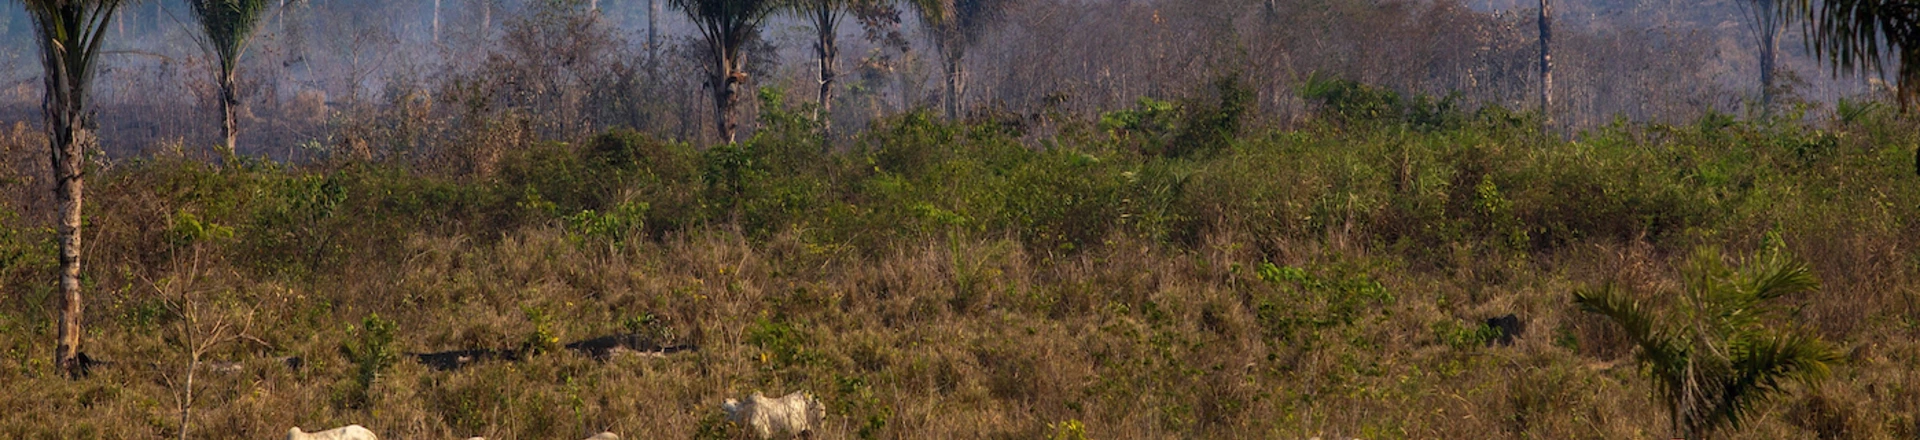 Gado pasta próximo a um local de incêndio recente no estado Pará, na floresta amazônica, em 25 de agosto de 2019.